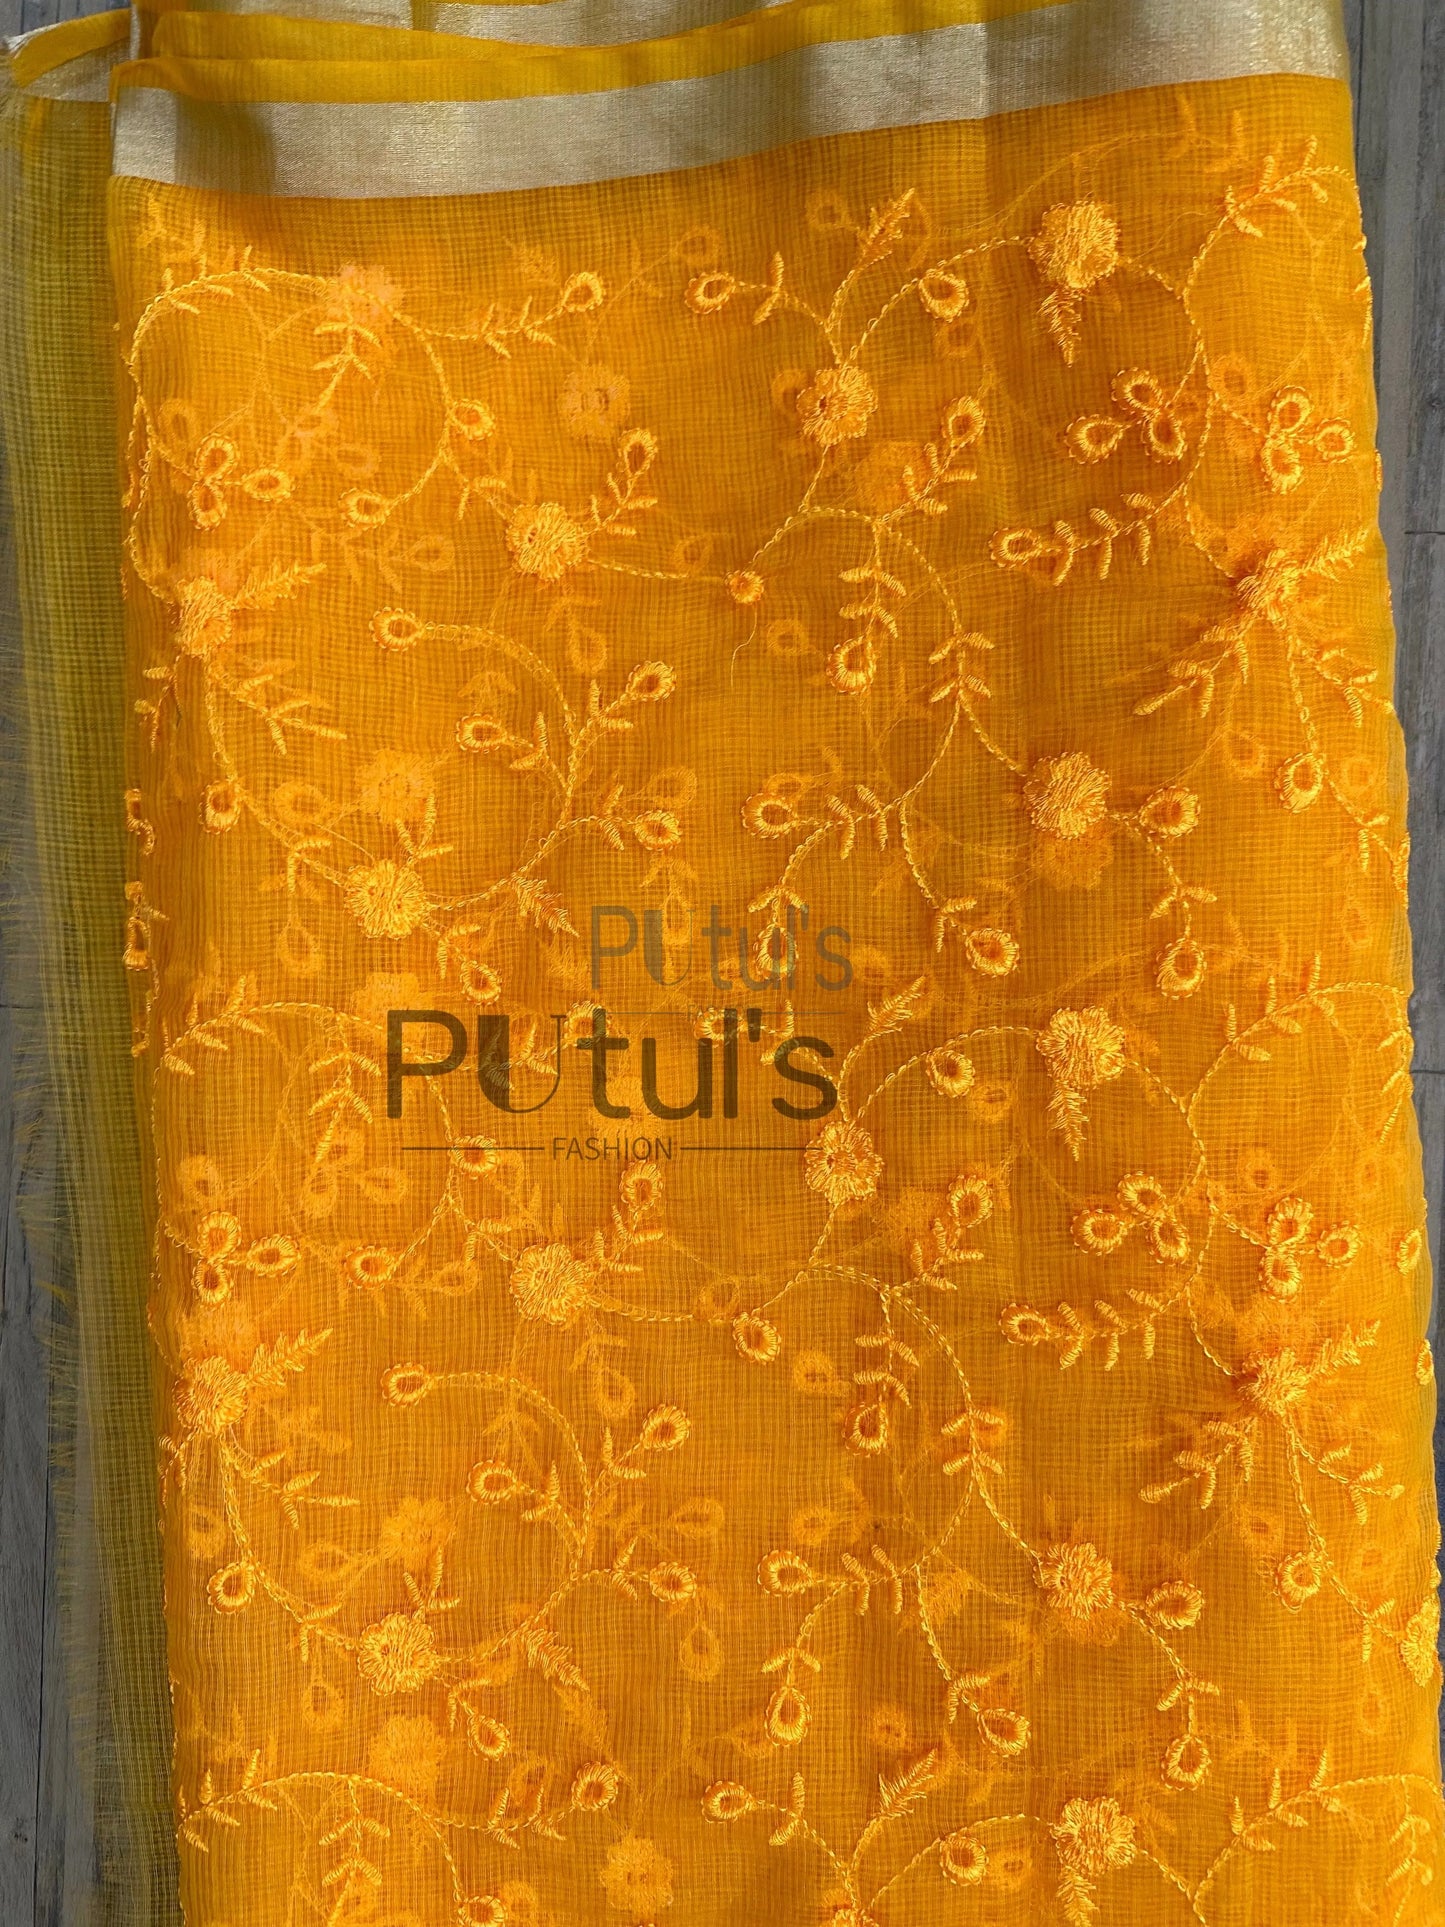 Kota embroidery saree Putul's Fashion